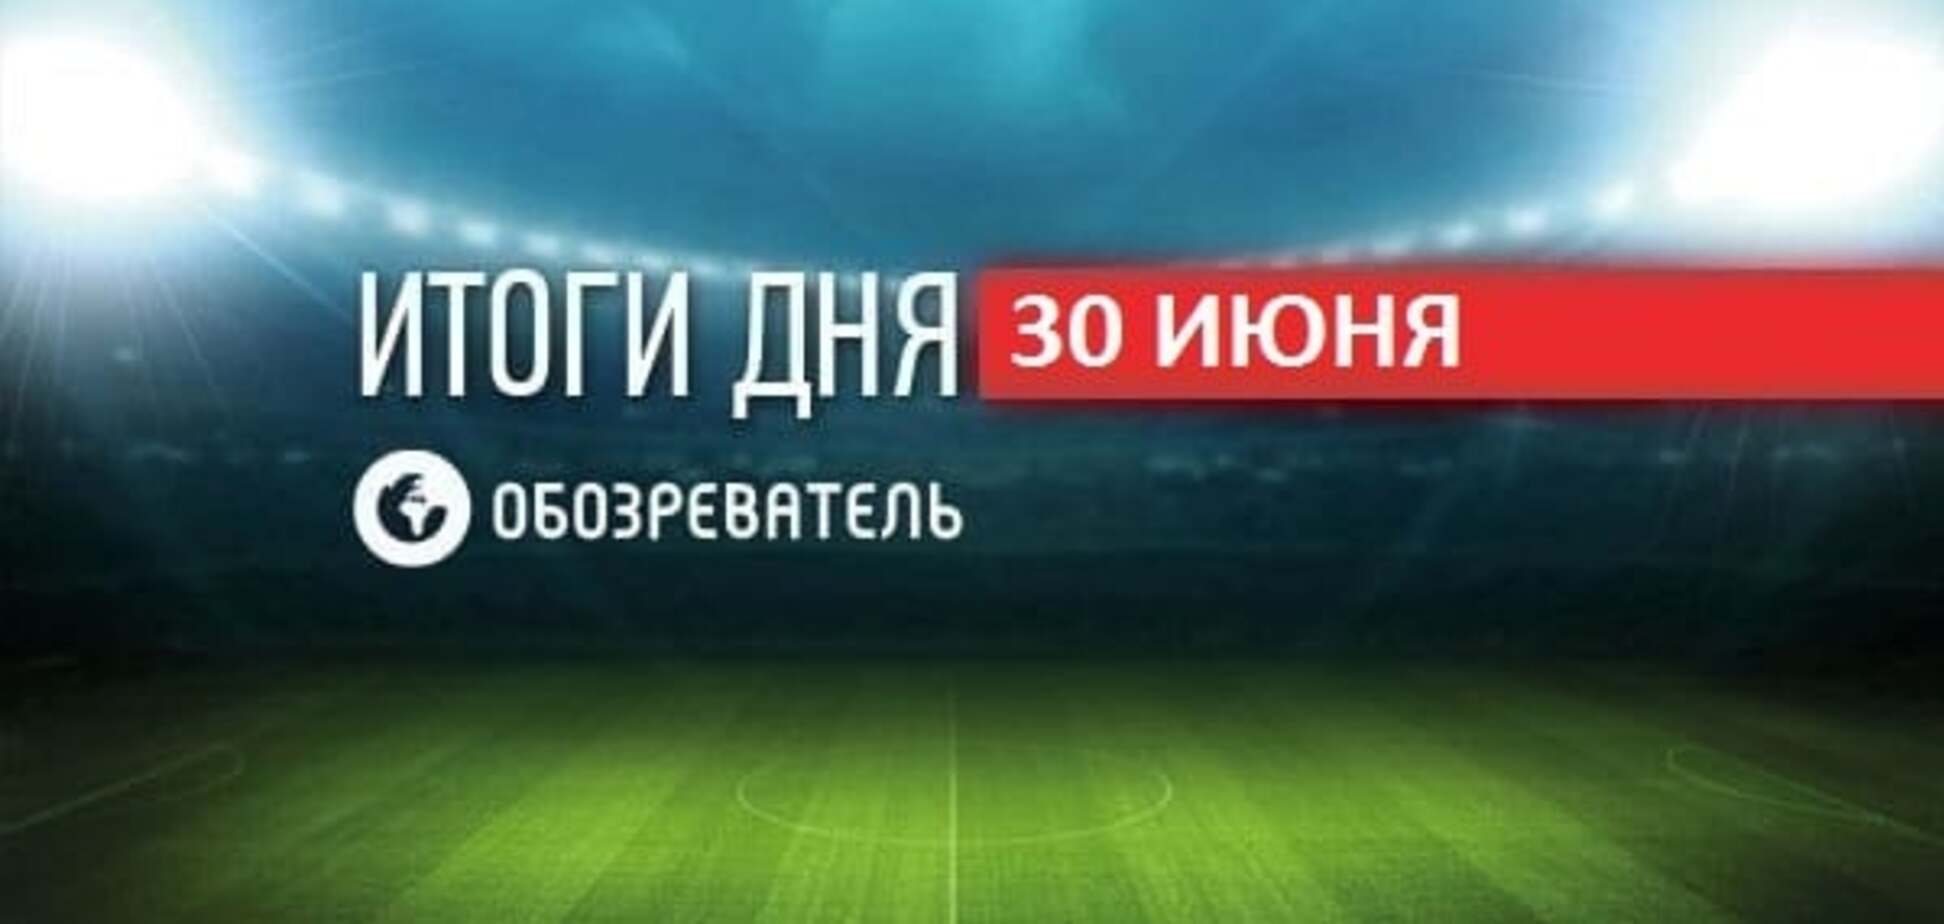 СМИ рассказали об отношениях футболистов в сборной Украины на Евро-2016. Спортивные итоги 30 июня